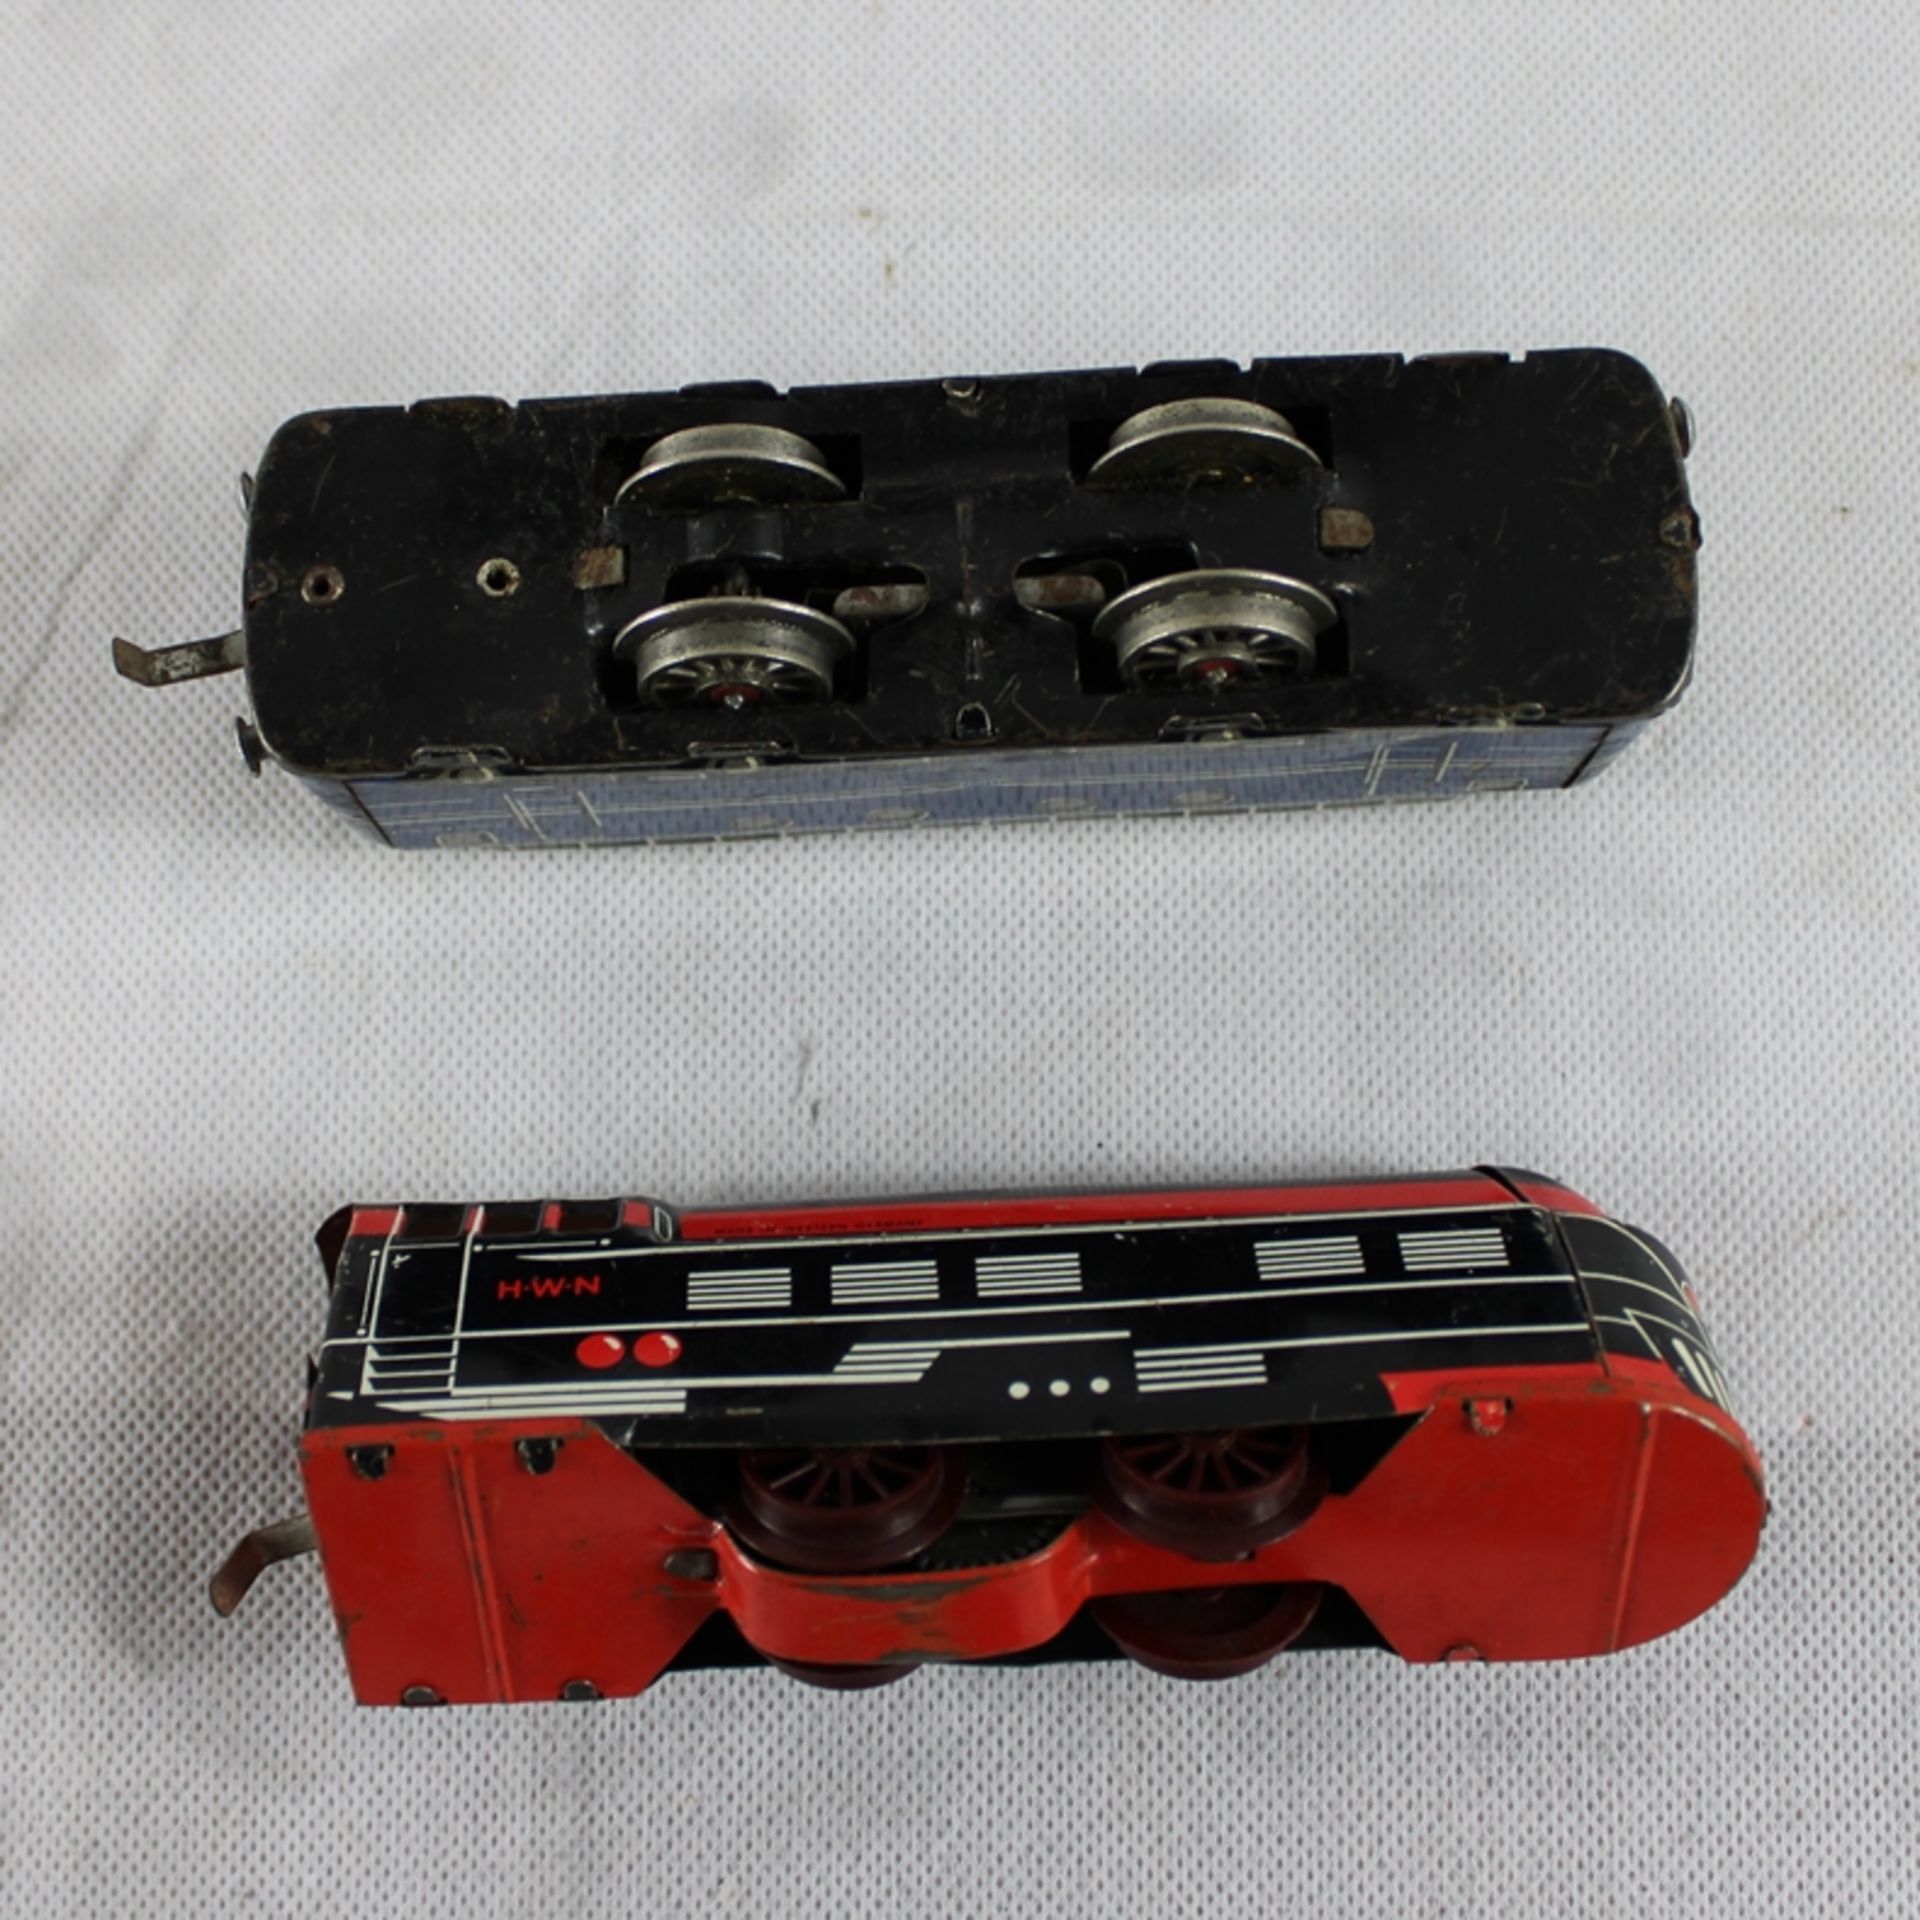 Blechspielzeug HWN Lokomotiven u. 3 Wagons Konvolut, ungetestet, Beschädigungen vorhanden - Bild 3 aus 3